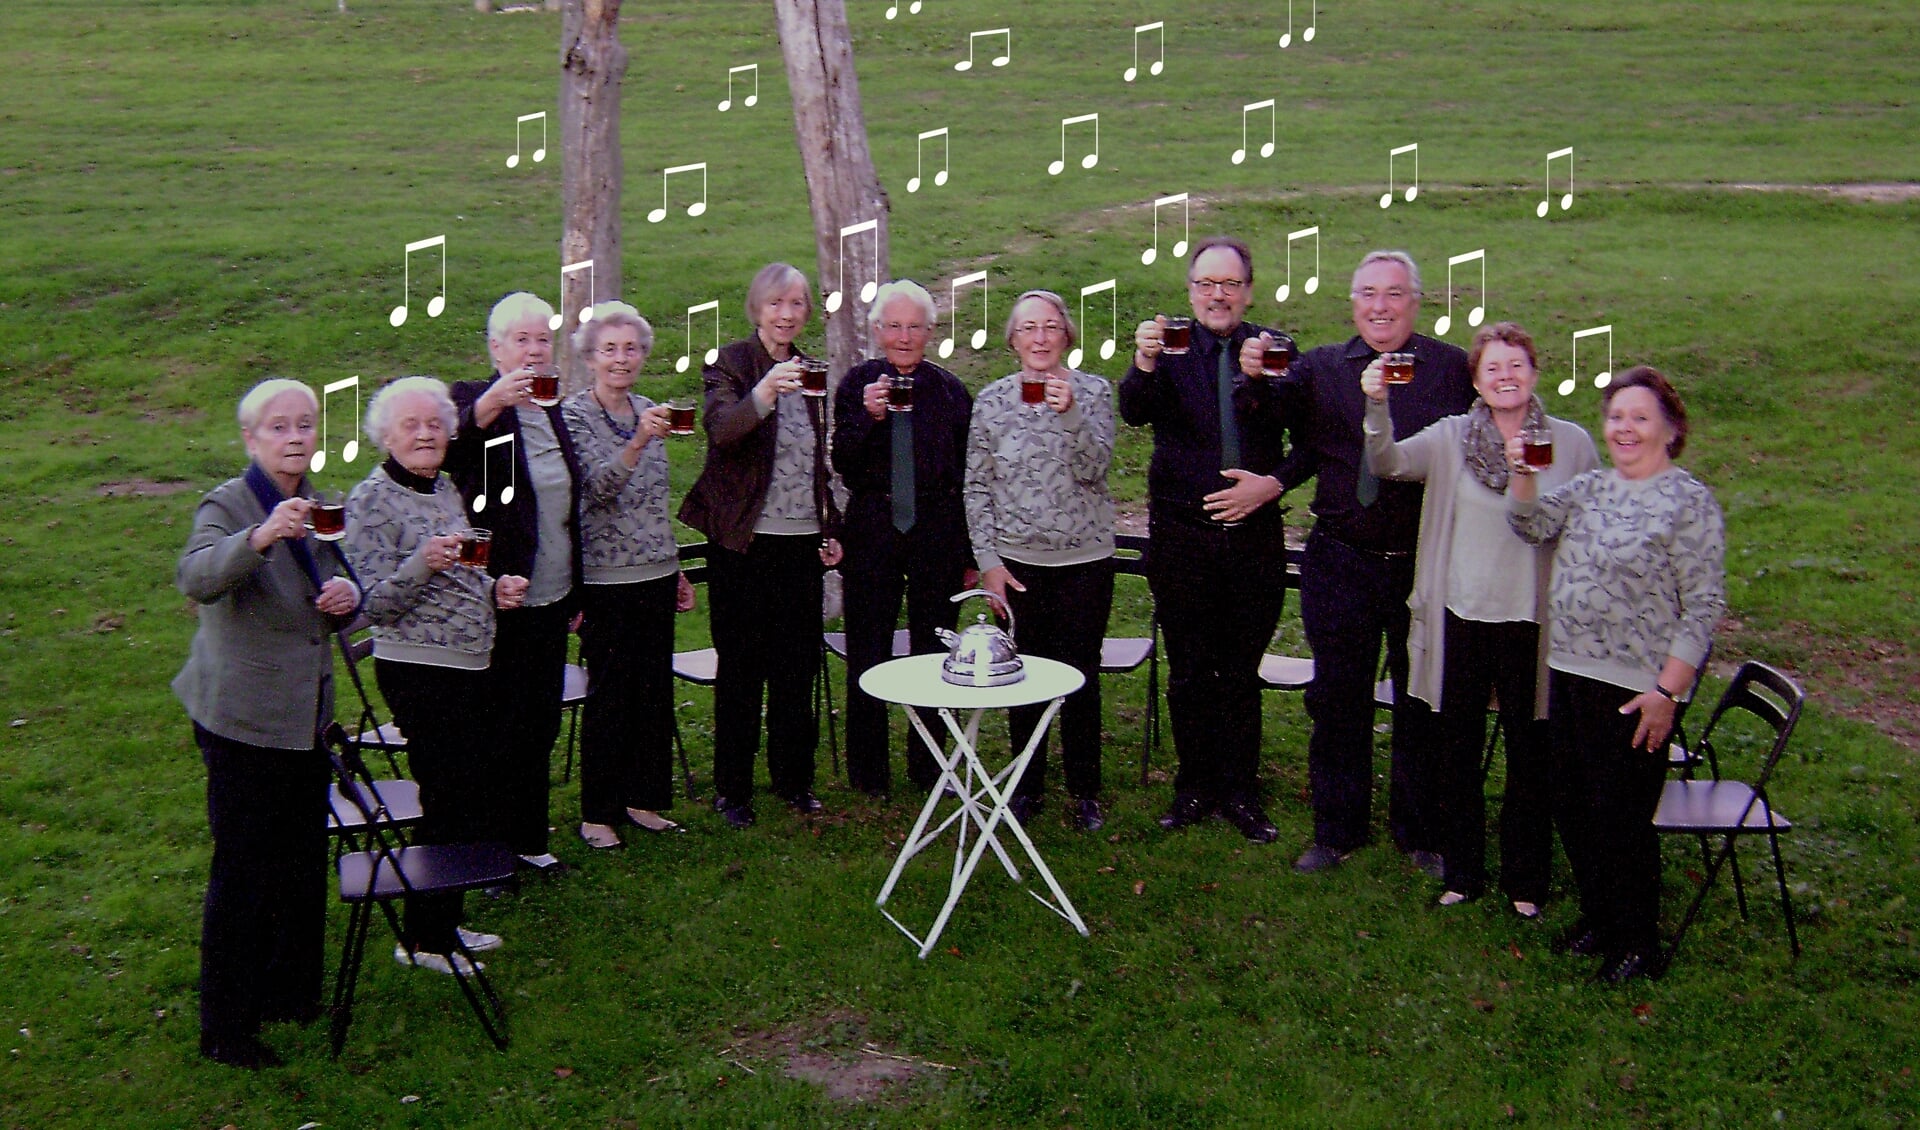 Gemengd koor Chantee nodigt mensen uit om een keer mee te komen zingen. (Foto:pr)